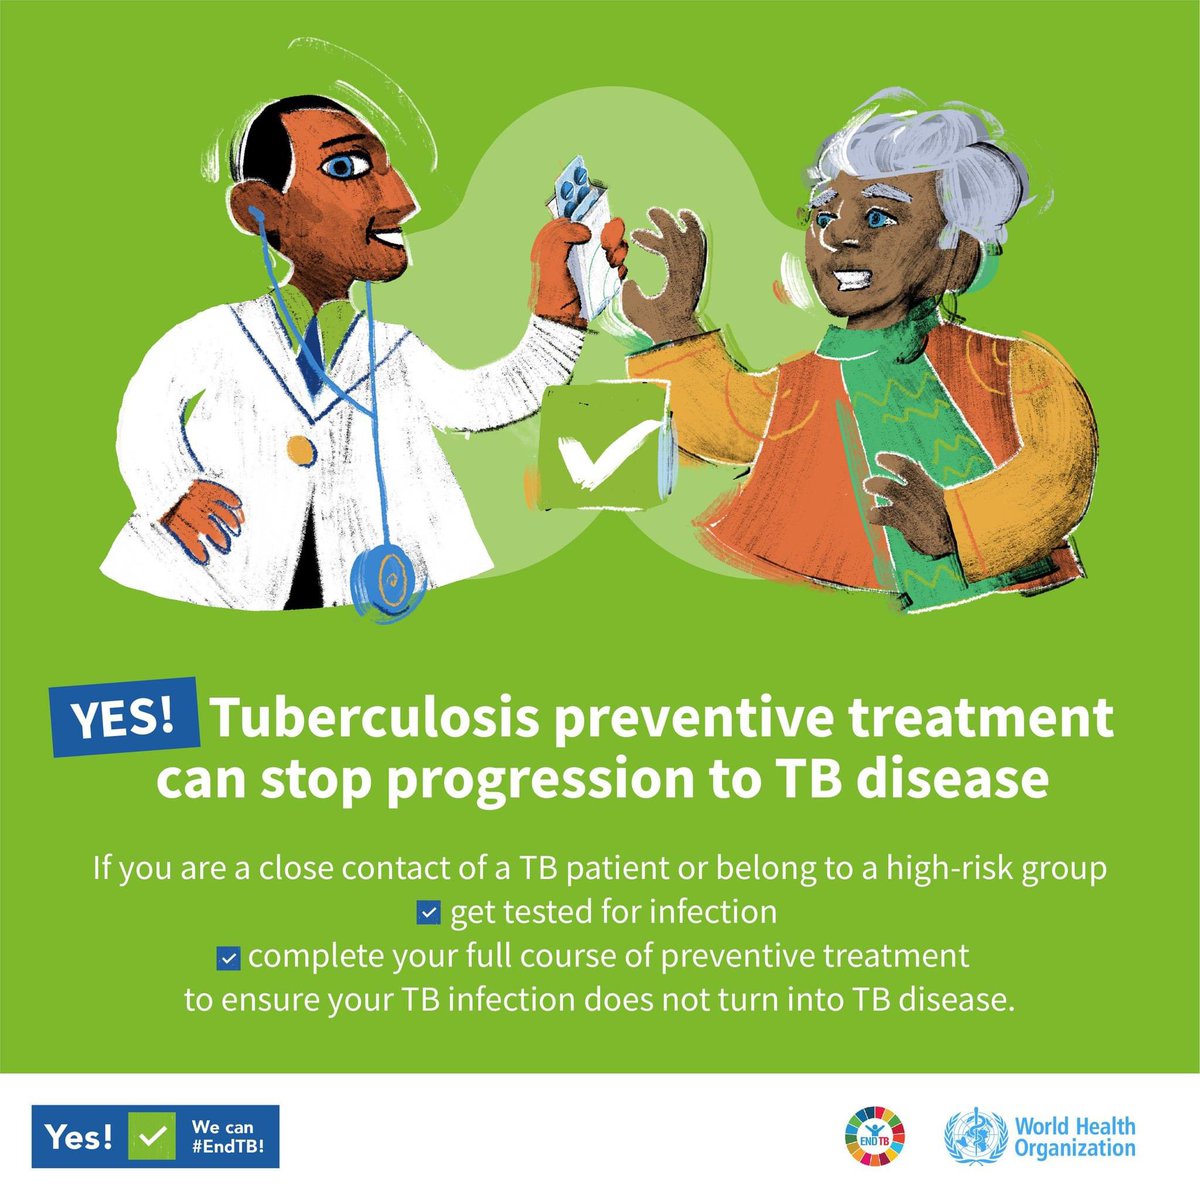 Yes! Mayroong #TB preventive treatment (TPT) para hindi tuluyang magkaroon ng TB disease!  

Kumunsulta sa pinakamalapit na health center kung ikaw ay:  

✅close contact ng taong may TB  
✅kabilang sa high-risk group (may karamdaman, PLHIV, nagda-dialysis, atbp.)  

#EndTB